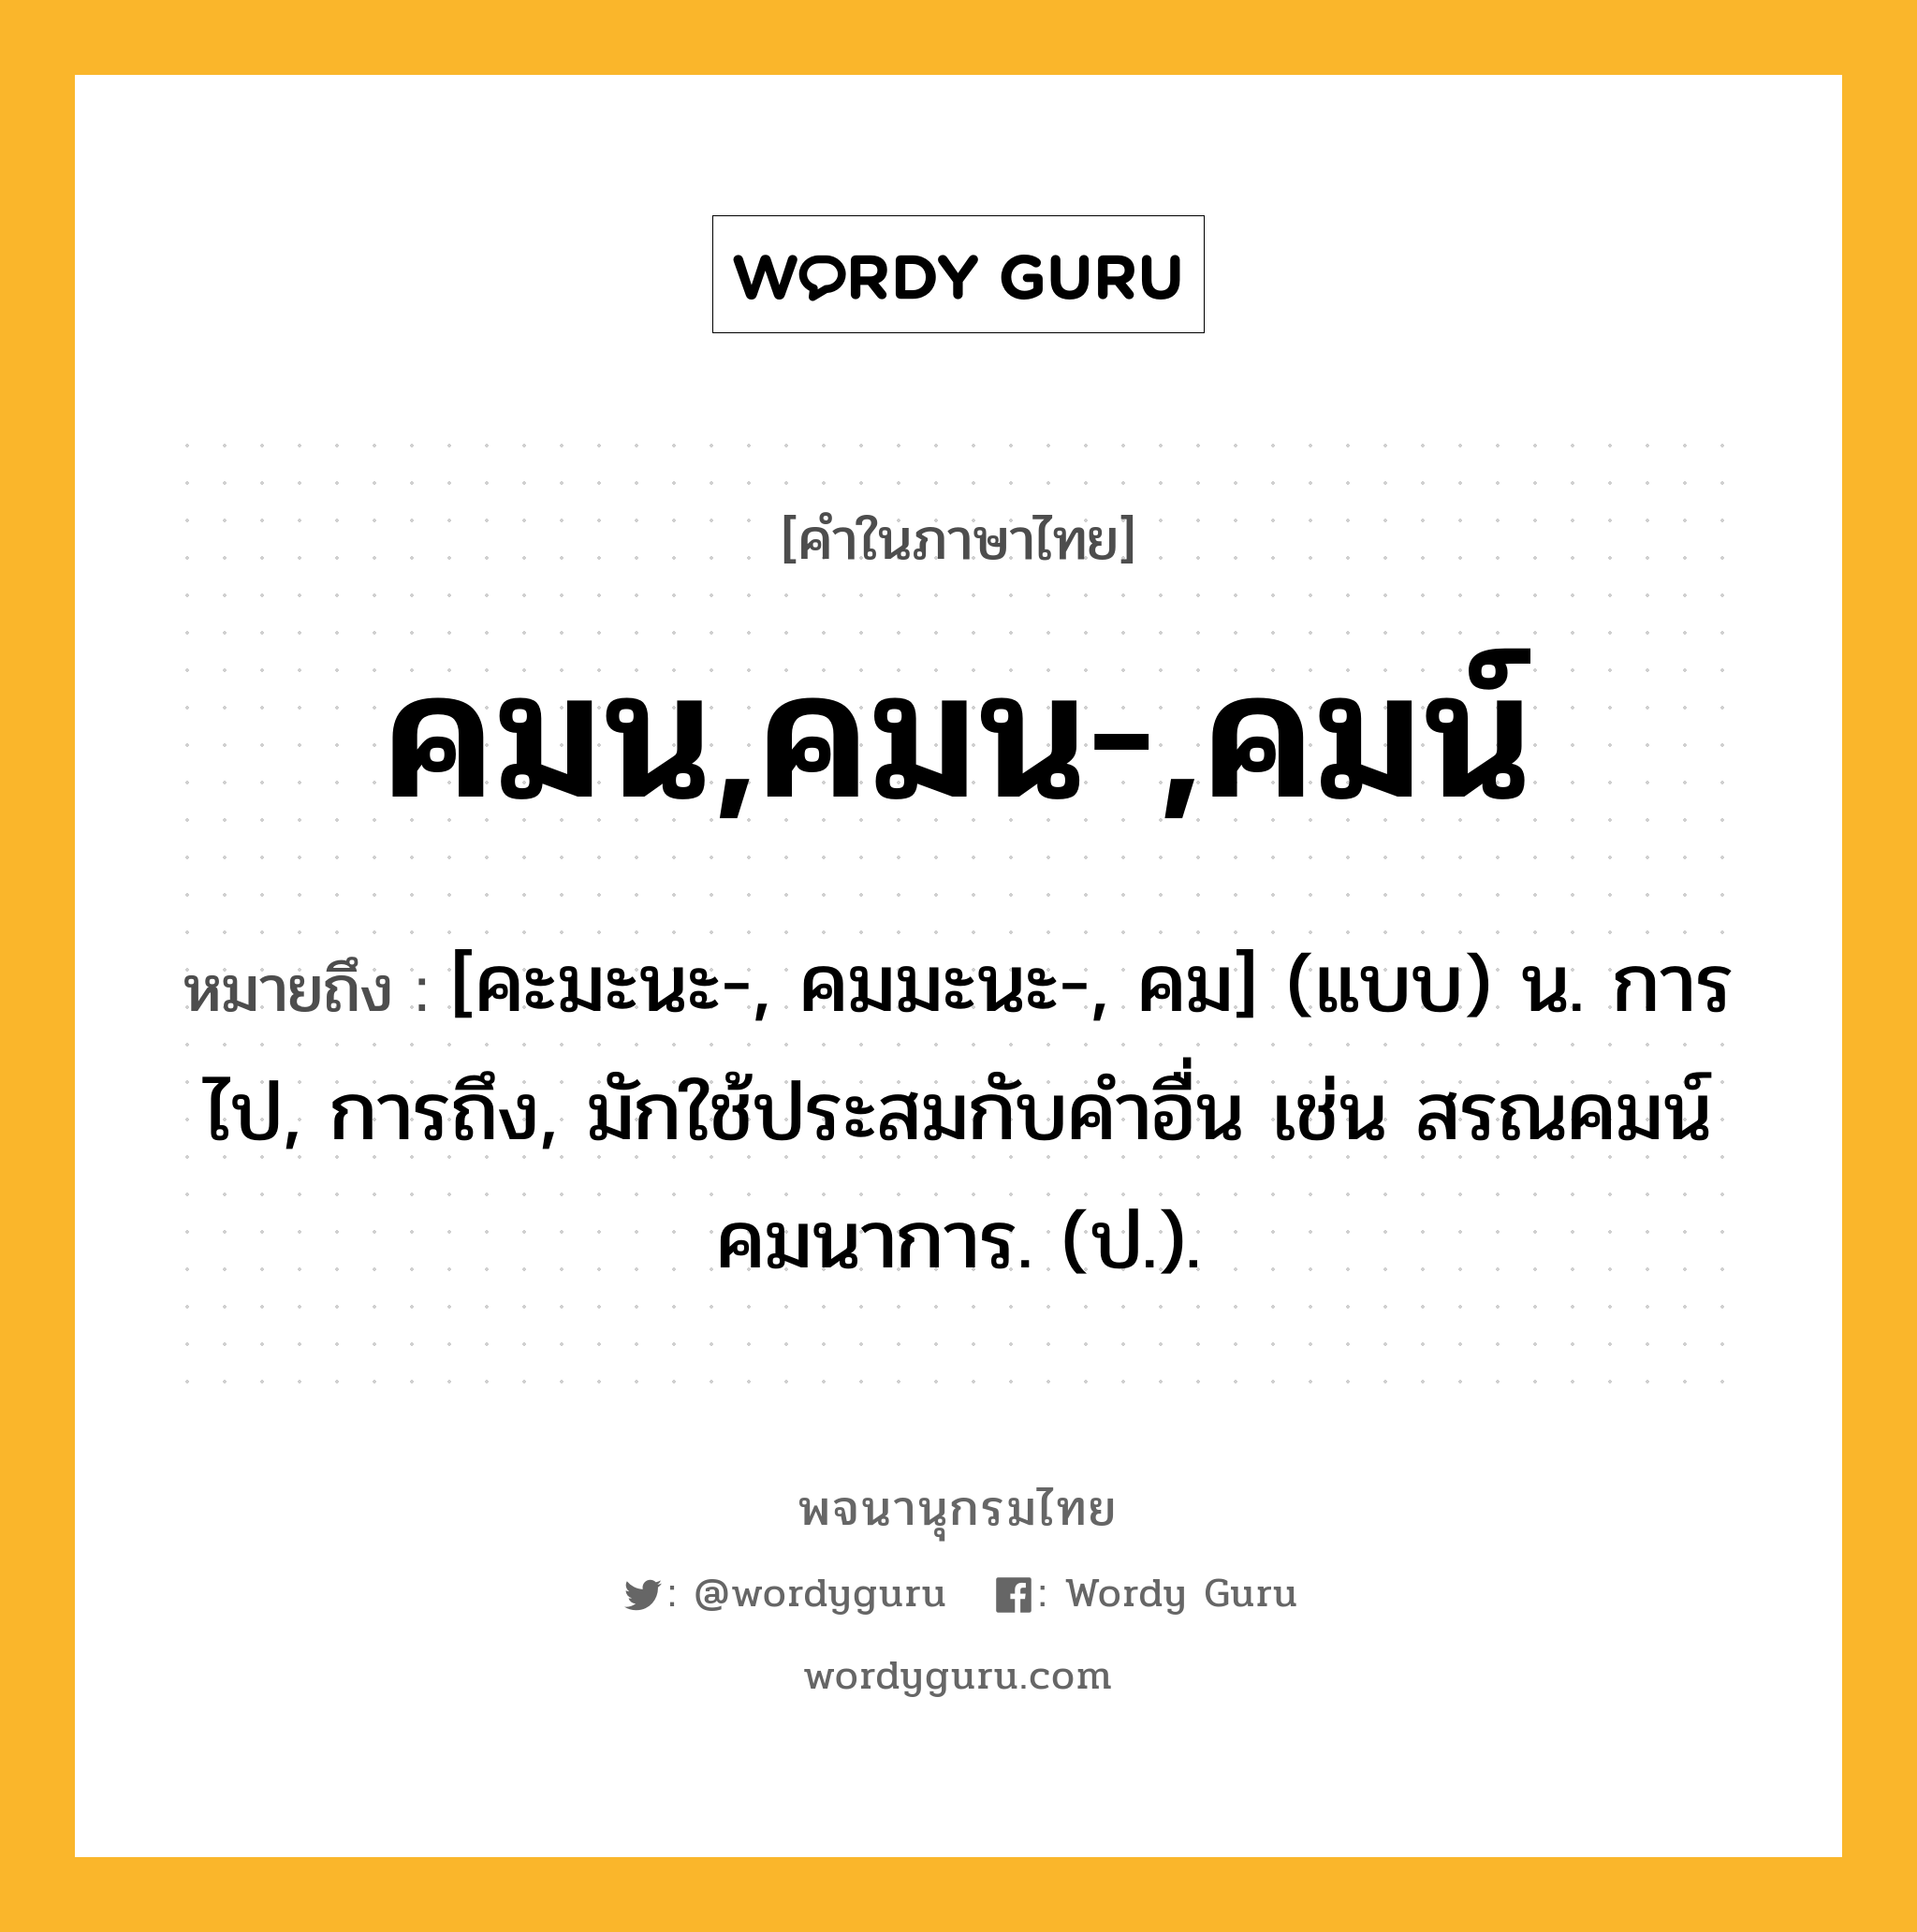 คมน,คมน-,คมน์ ความหมาย หมายถึงอะไร?, คำในภาษาไทย คมน,คมน-,คมน์ หมายถึง [คะมะนะ-, คมมะนะ-, คม] (แบบ) น. การไป, การถึง, มักใช้ประสมกับคําอื่น เช่น สรณคมน์ คมนาการ. (ป.).